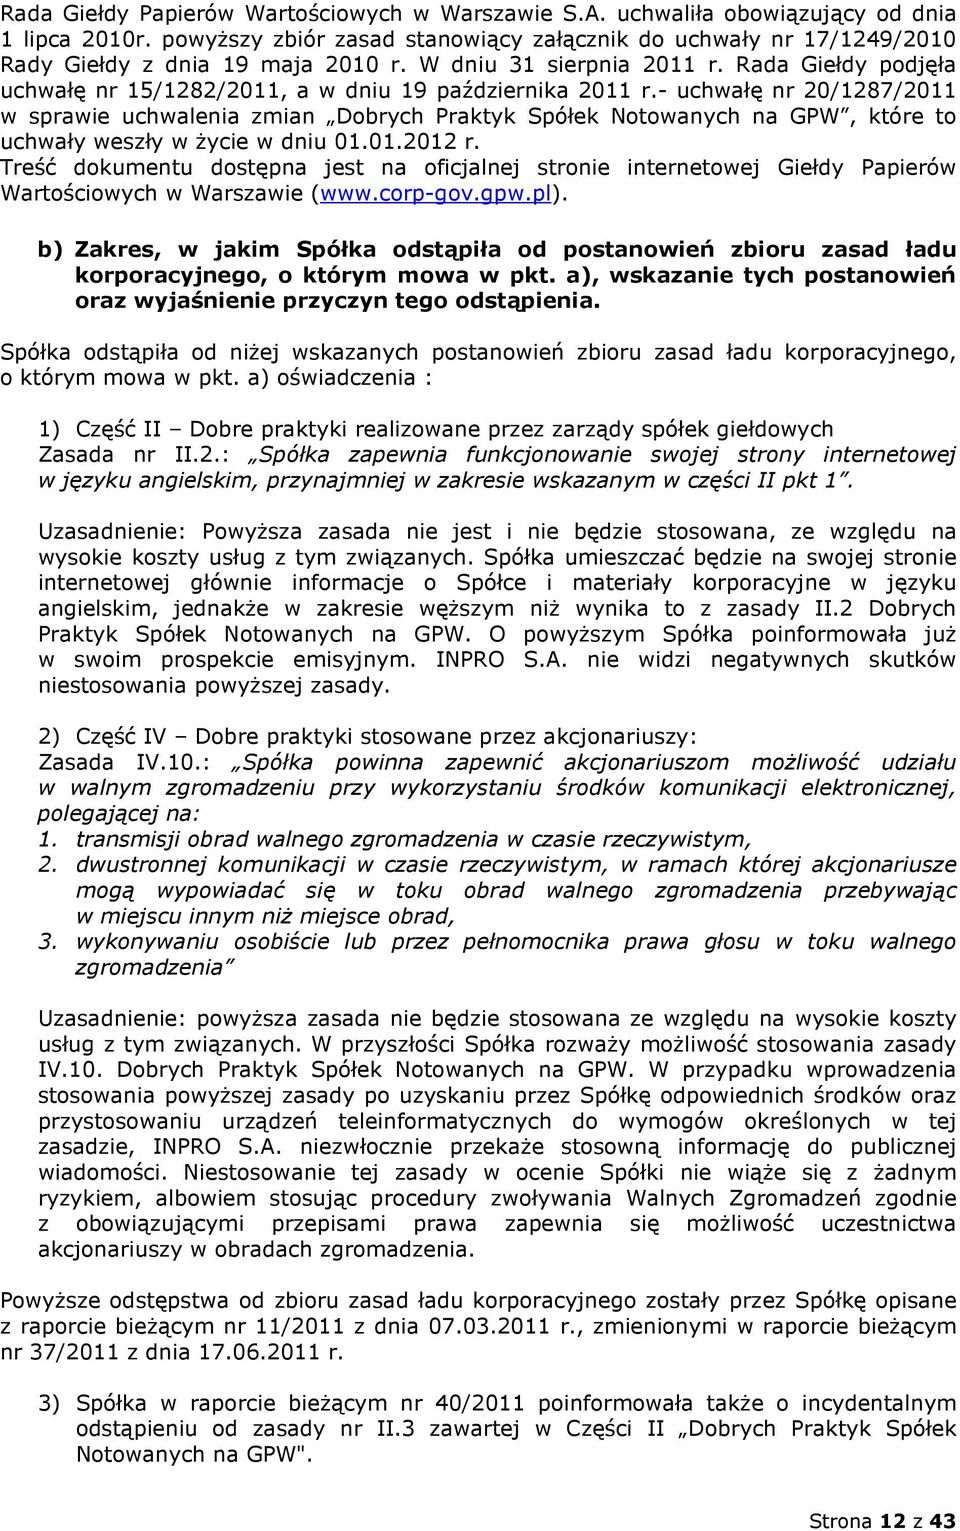 Rada Giełdy podjęła uchwałę nr 15/1282/2011, a w dniu 19 października 2011 r.